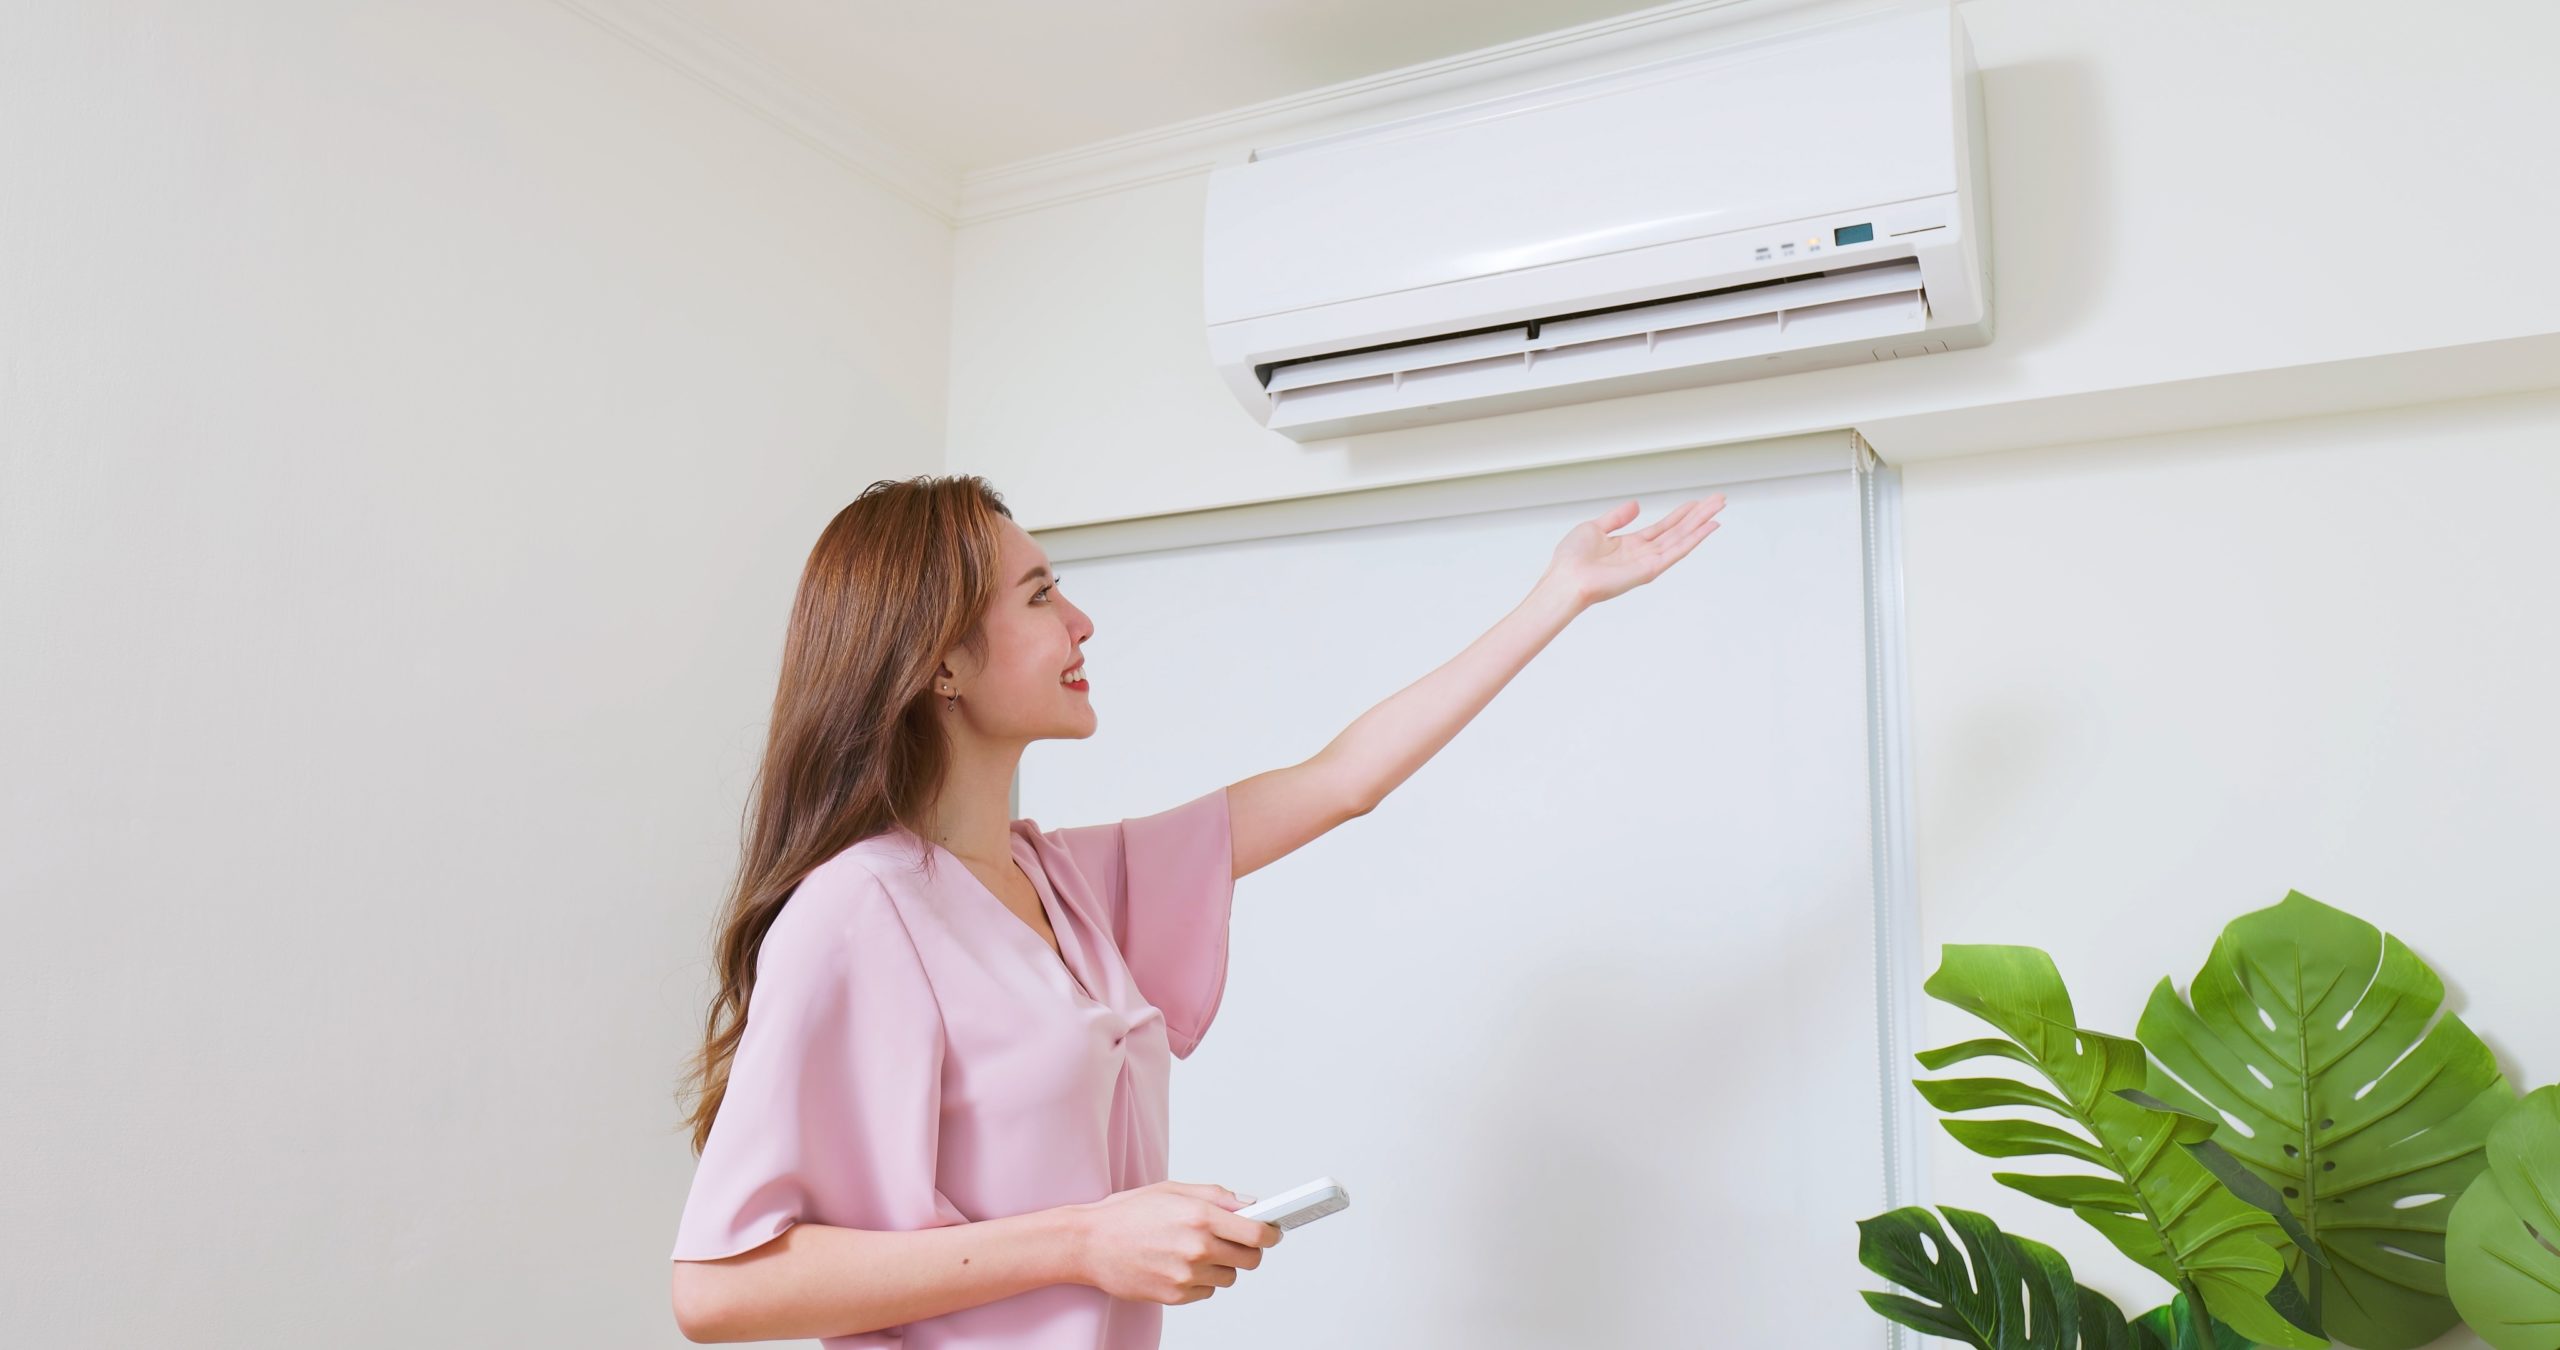 Ar-condicionado split ou de janela; qual o mais econômico? – Tecnoblog